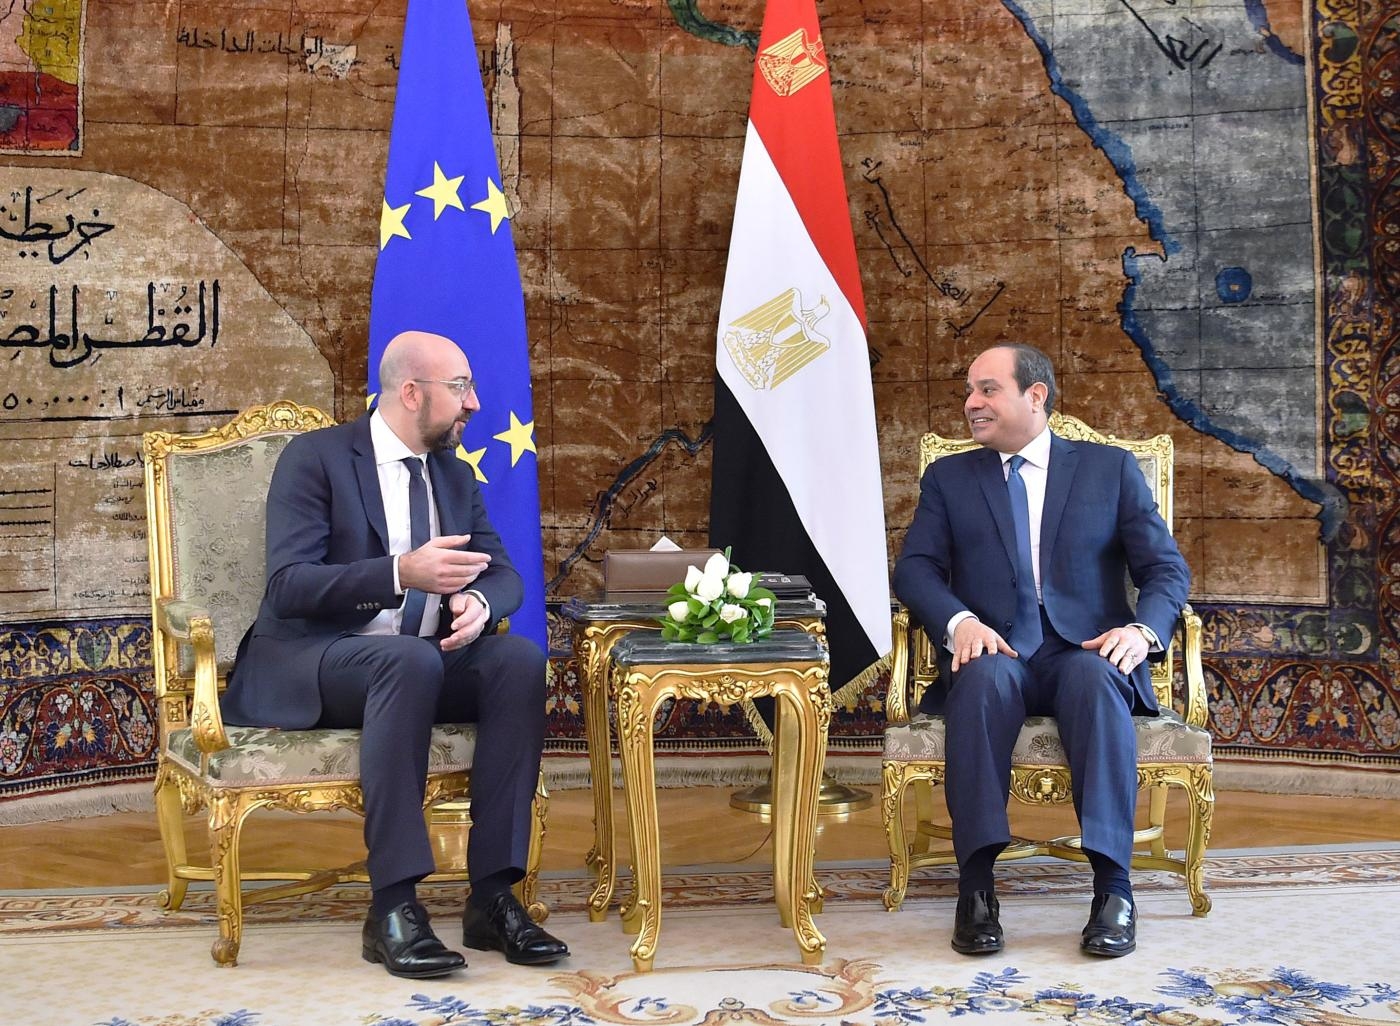 Le président égyptien Abdel Fattah al-Sissi (à droite) rencontre le président du Conseil européen Charles Michel au palais présidentiel du Caire, le 12 janvier 2020 (AFP)